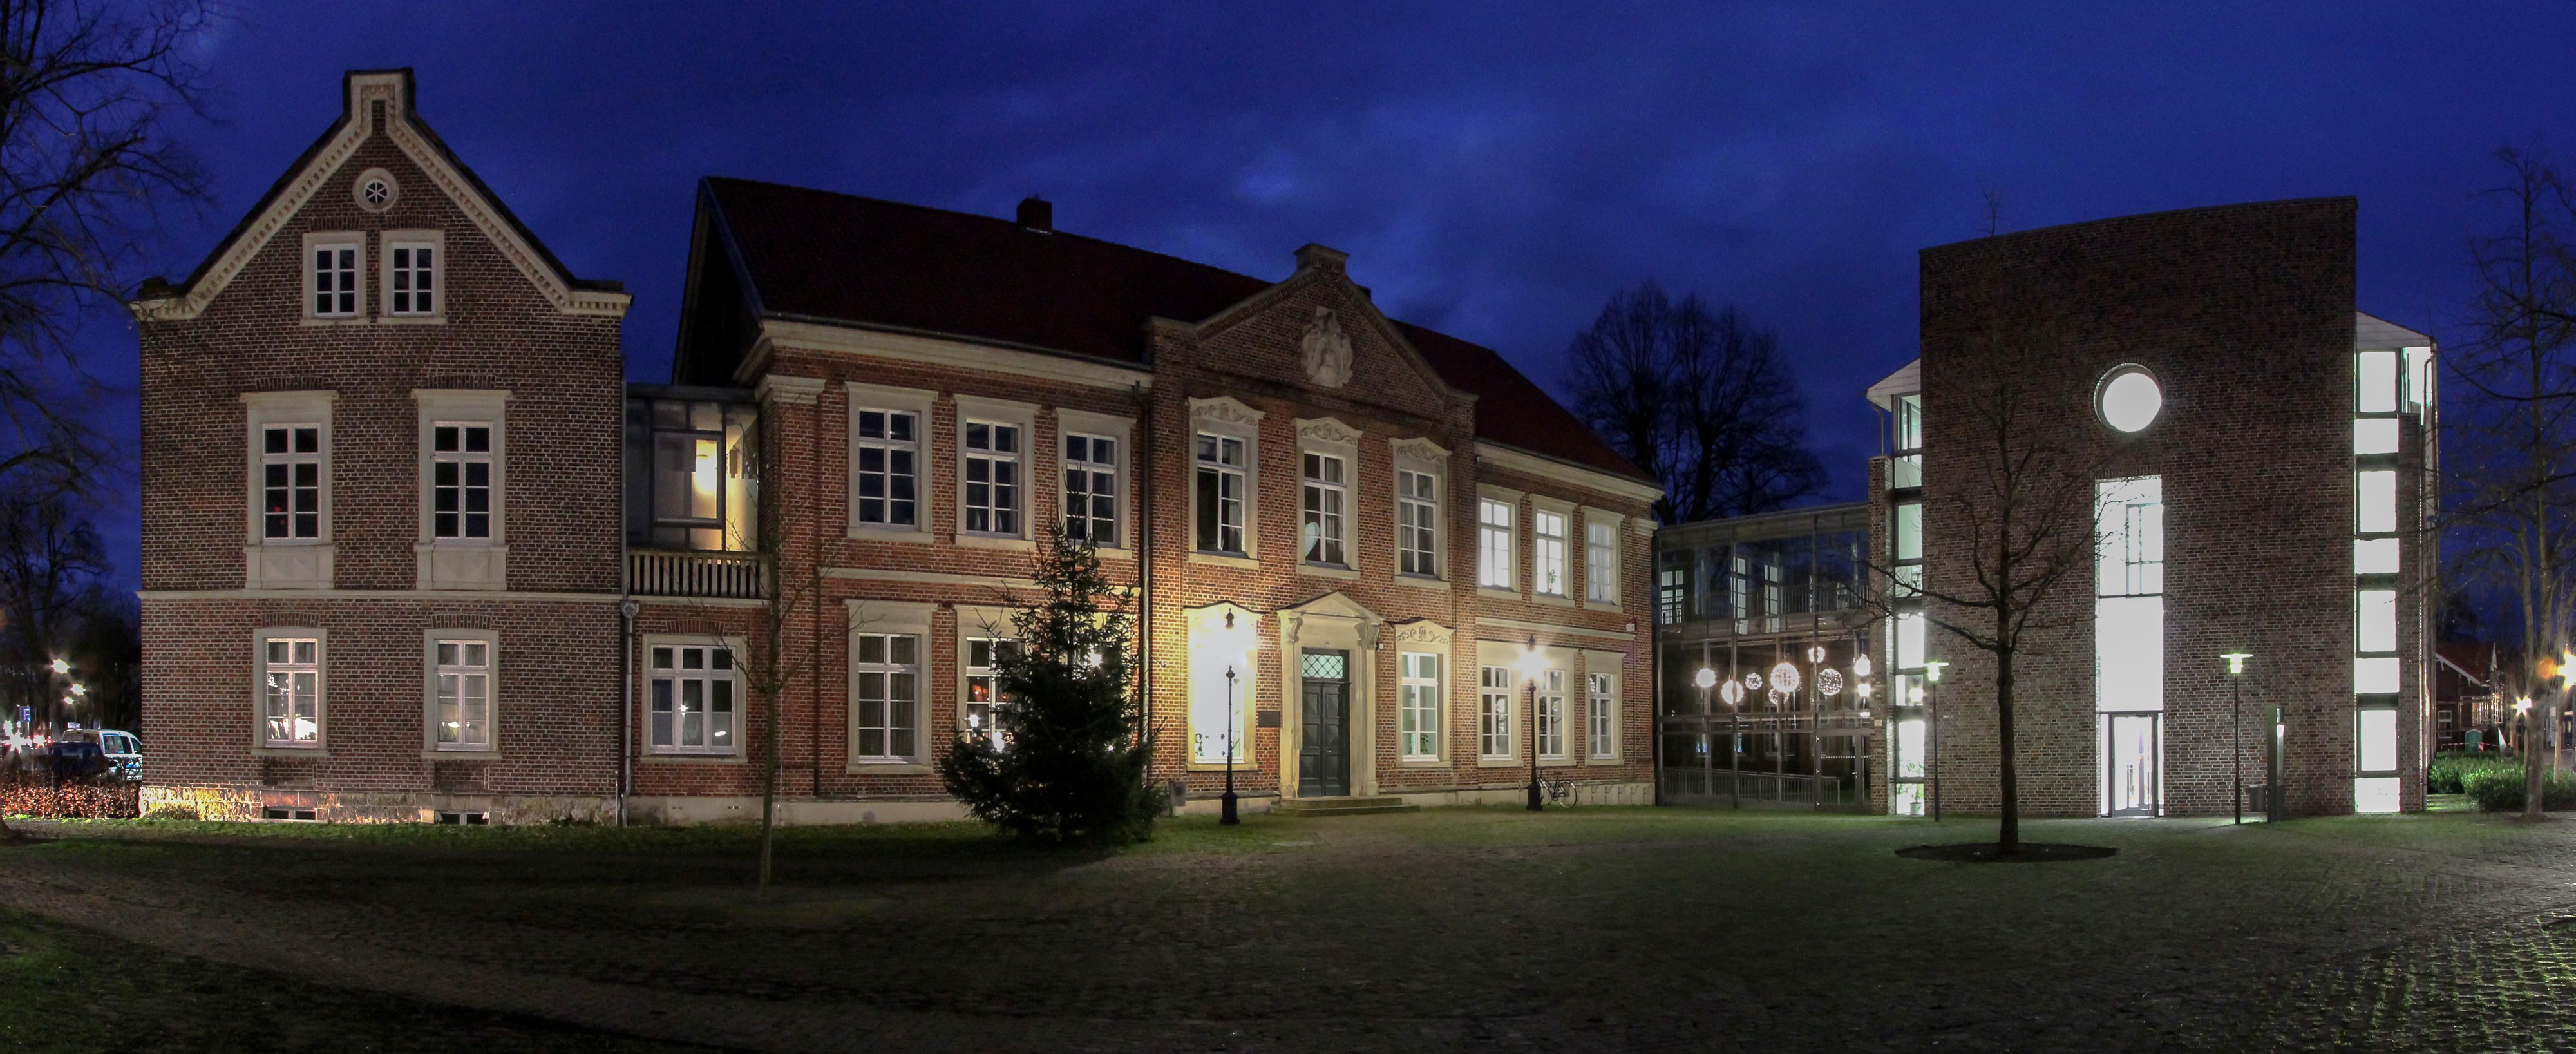 Lüdinghausen, Rathaus -- 2014 -- 5513-4